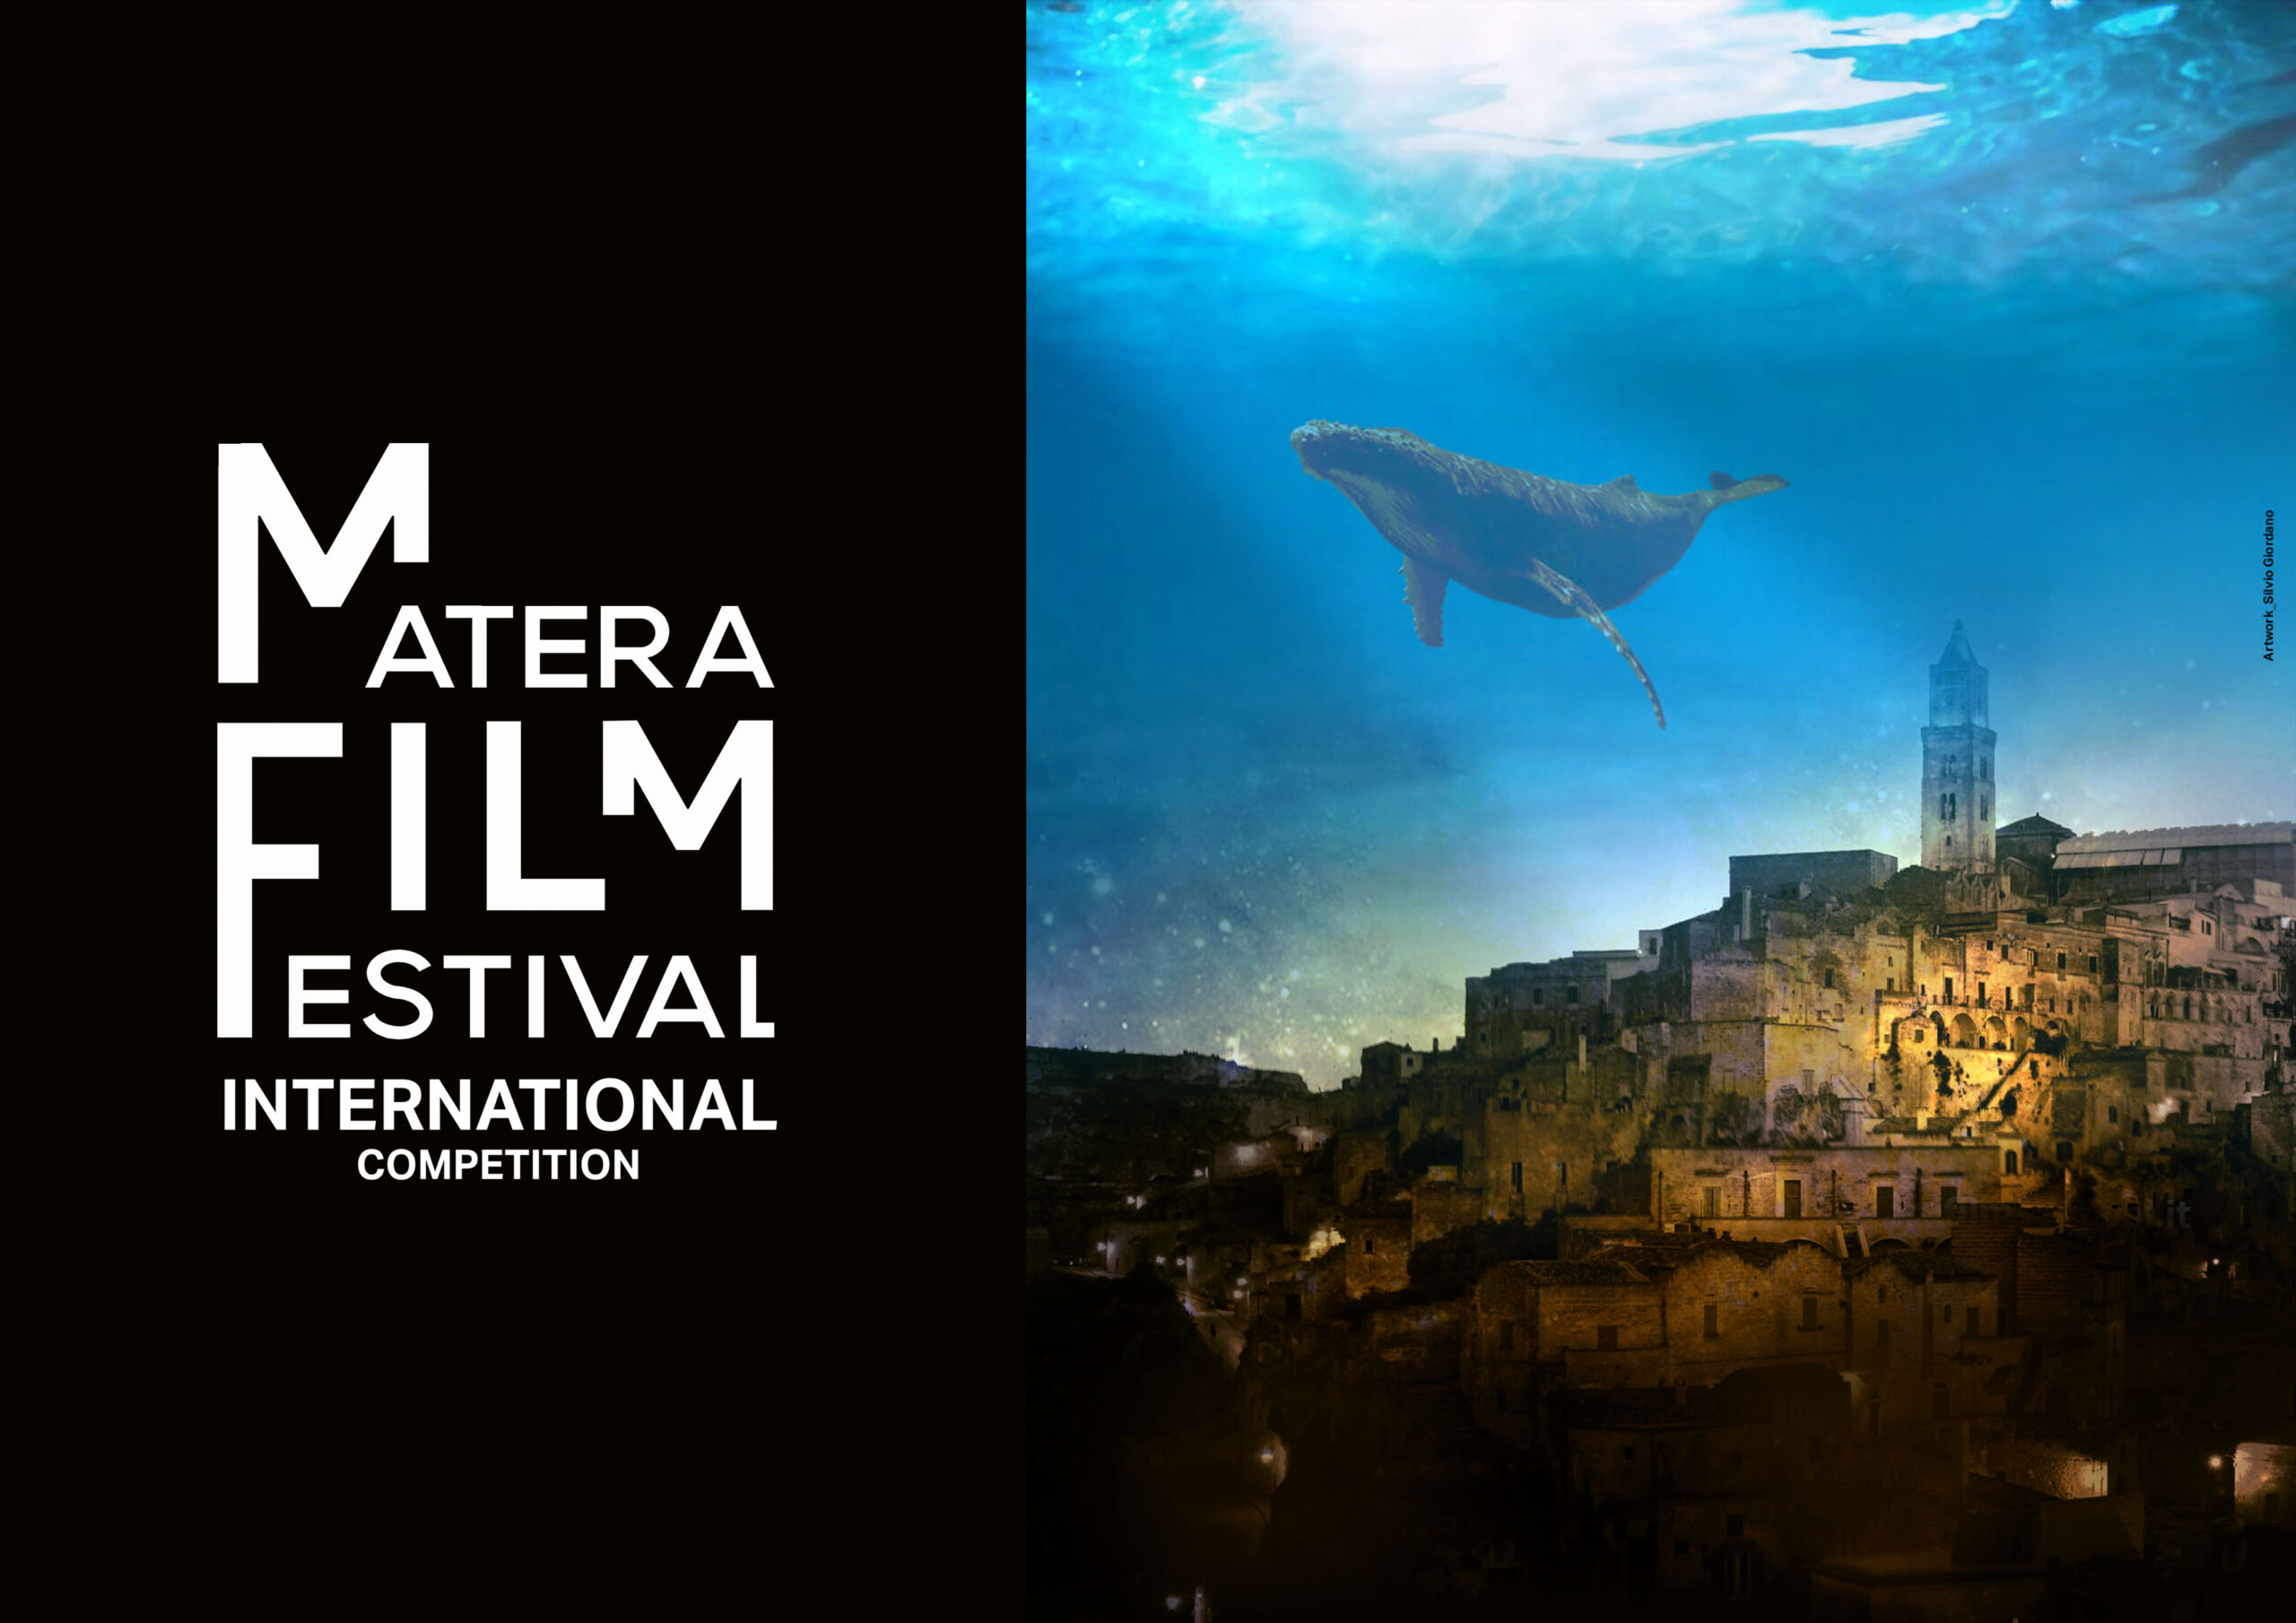 Matera Film Festival, dall’1 all’8 ottobre la terza edizione. Posticipata al 7 agosto la data per l’invio dei film